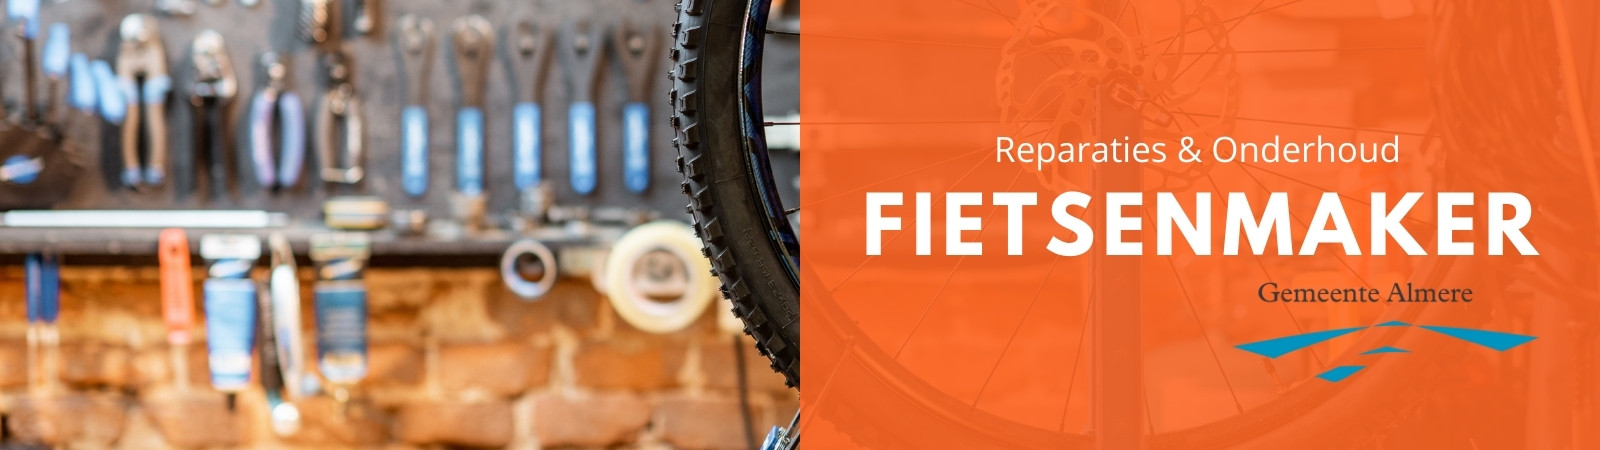 Fietsenmaker Almere - voor al uw reparaties en onderhoud van fietsen in Almere